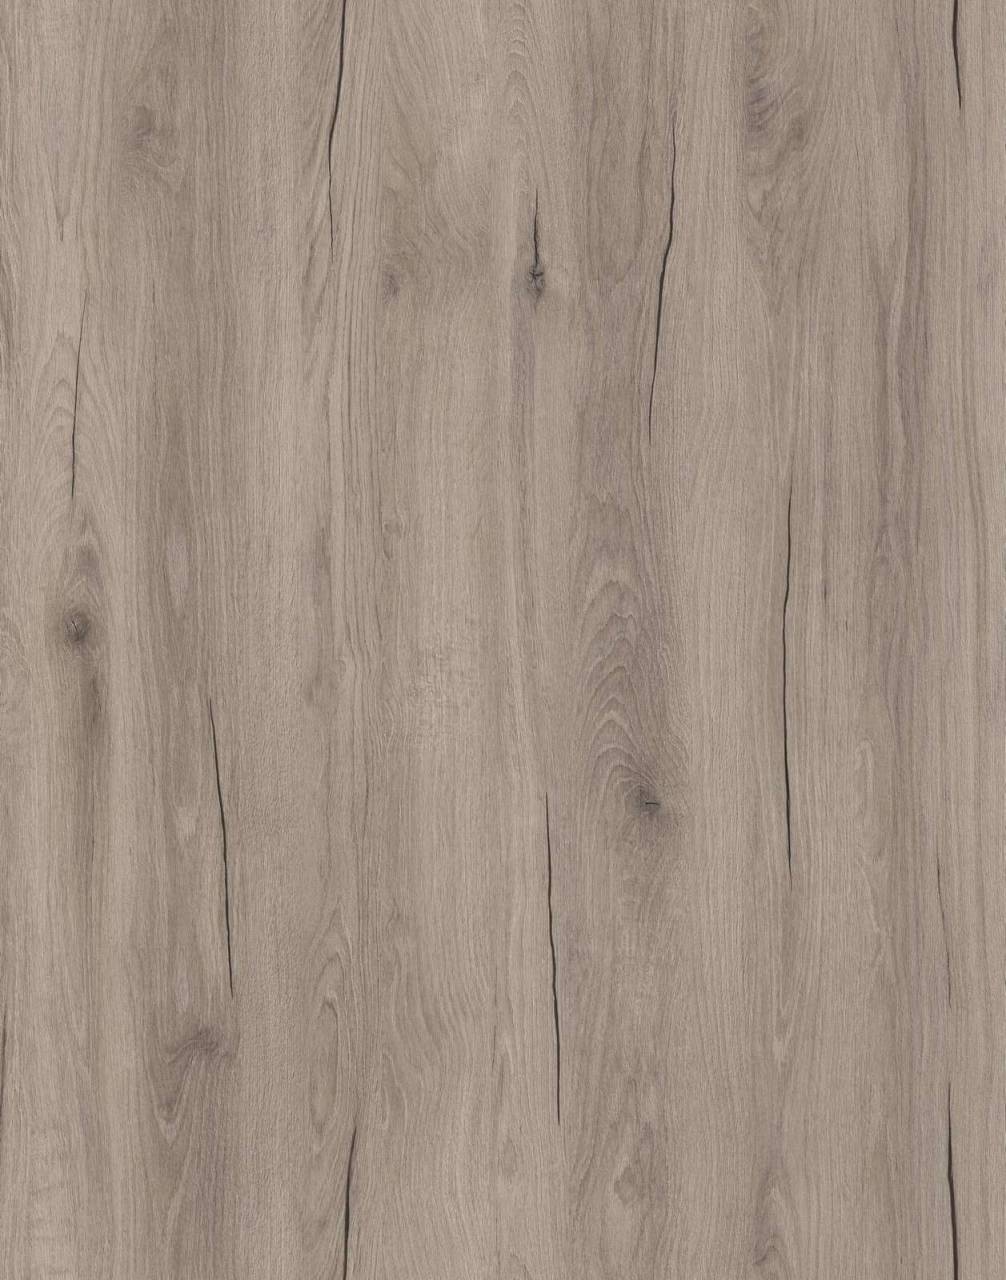 Close-up of K528 Cashmere Hudson Oak sample, featuring elegant Cashmere Hudson Oak color.